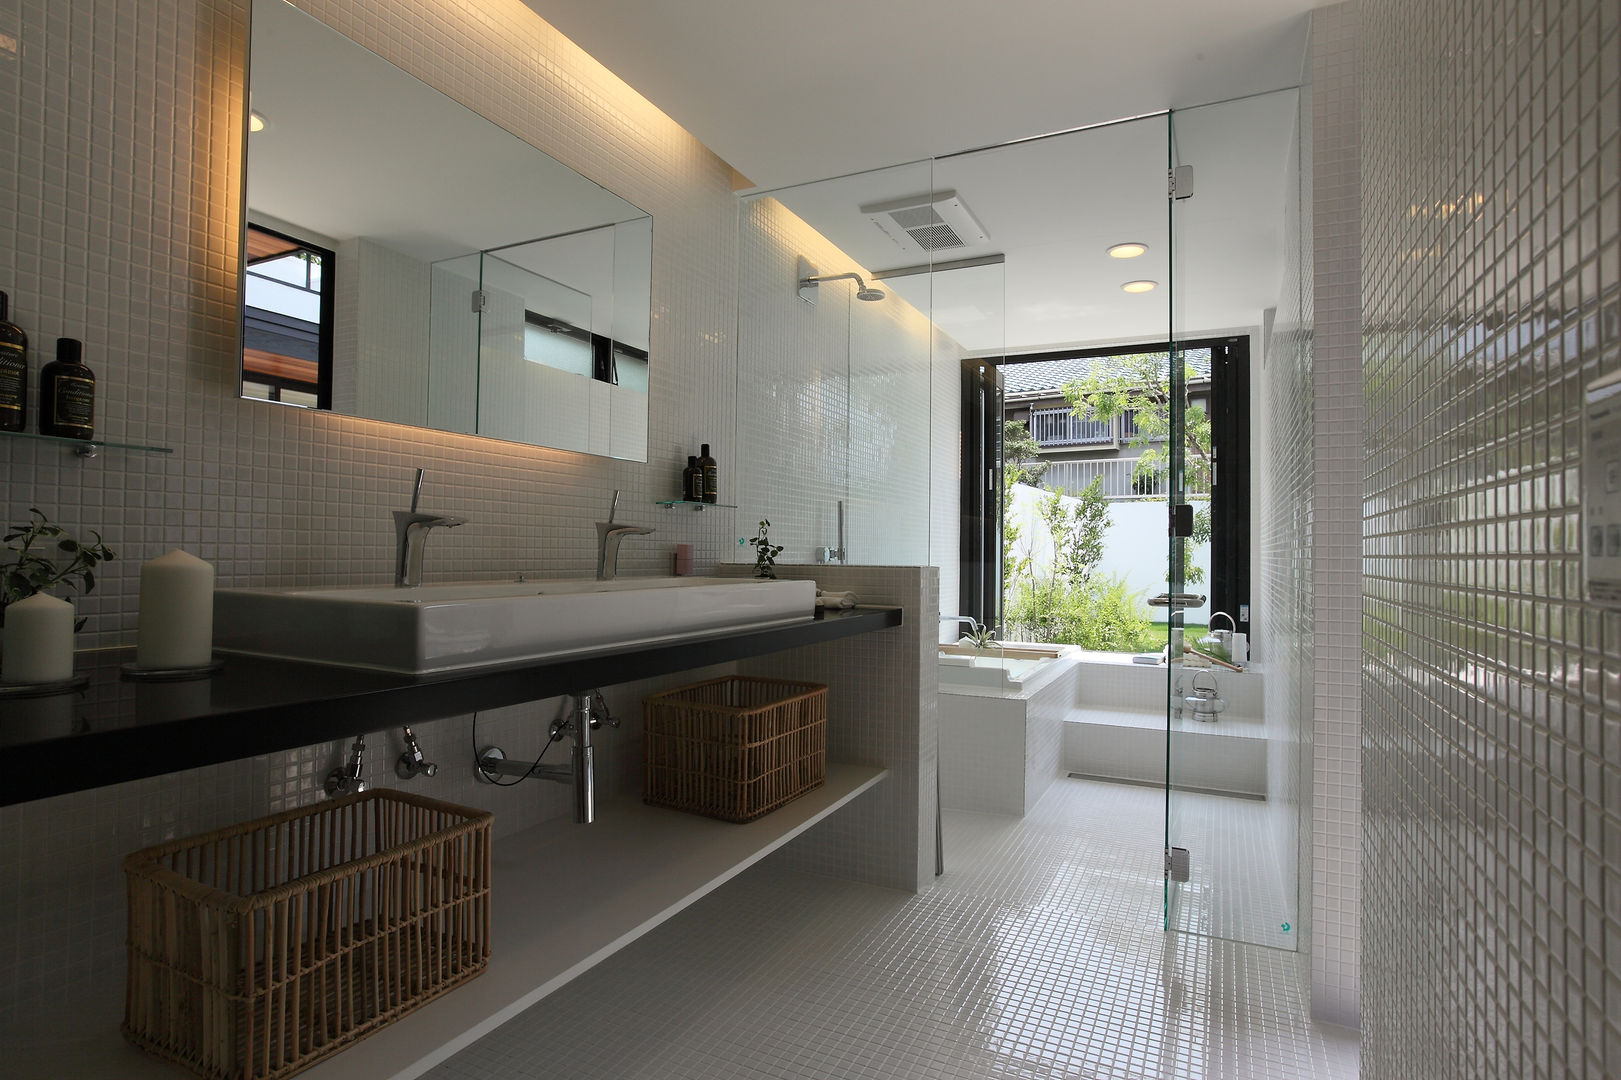 House with the bath of bird, Sakurayama-Architect-Design Sakurayama-Architect-Design Kamar Mandi Modern